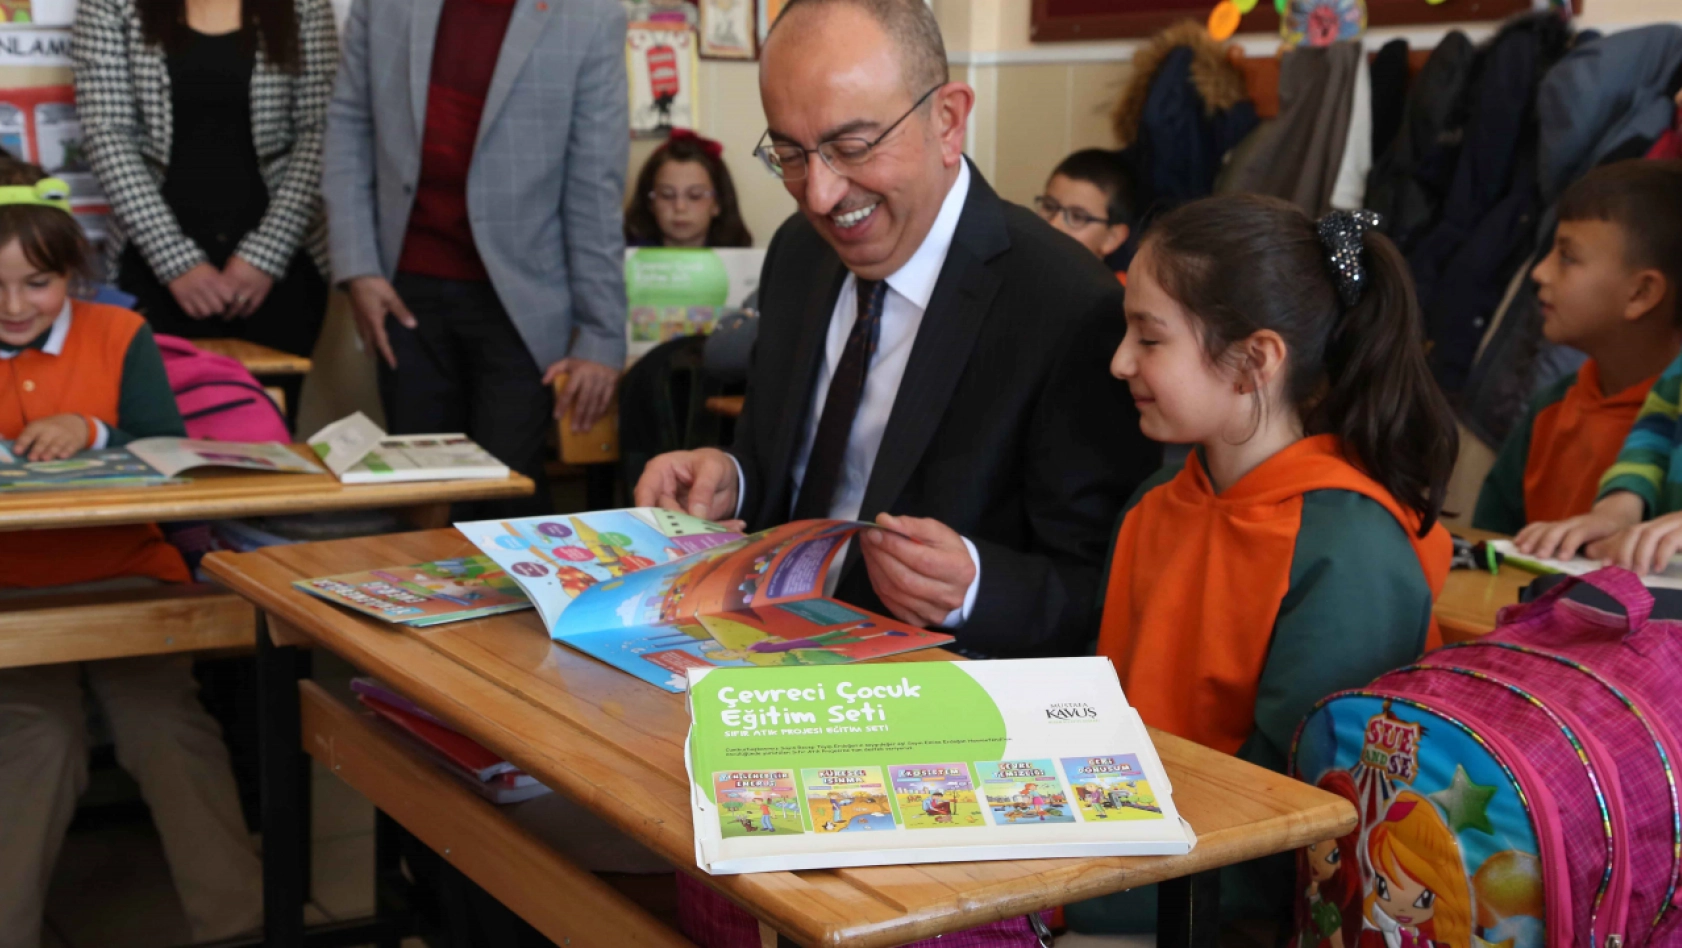 Meram Belediyesi, 'Çevreci Çocuk Eğitim Seti' dağıtarak öğrencileri bilinçlendirdi